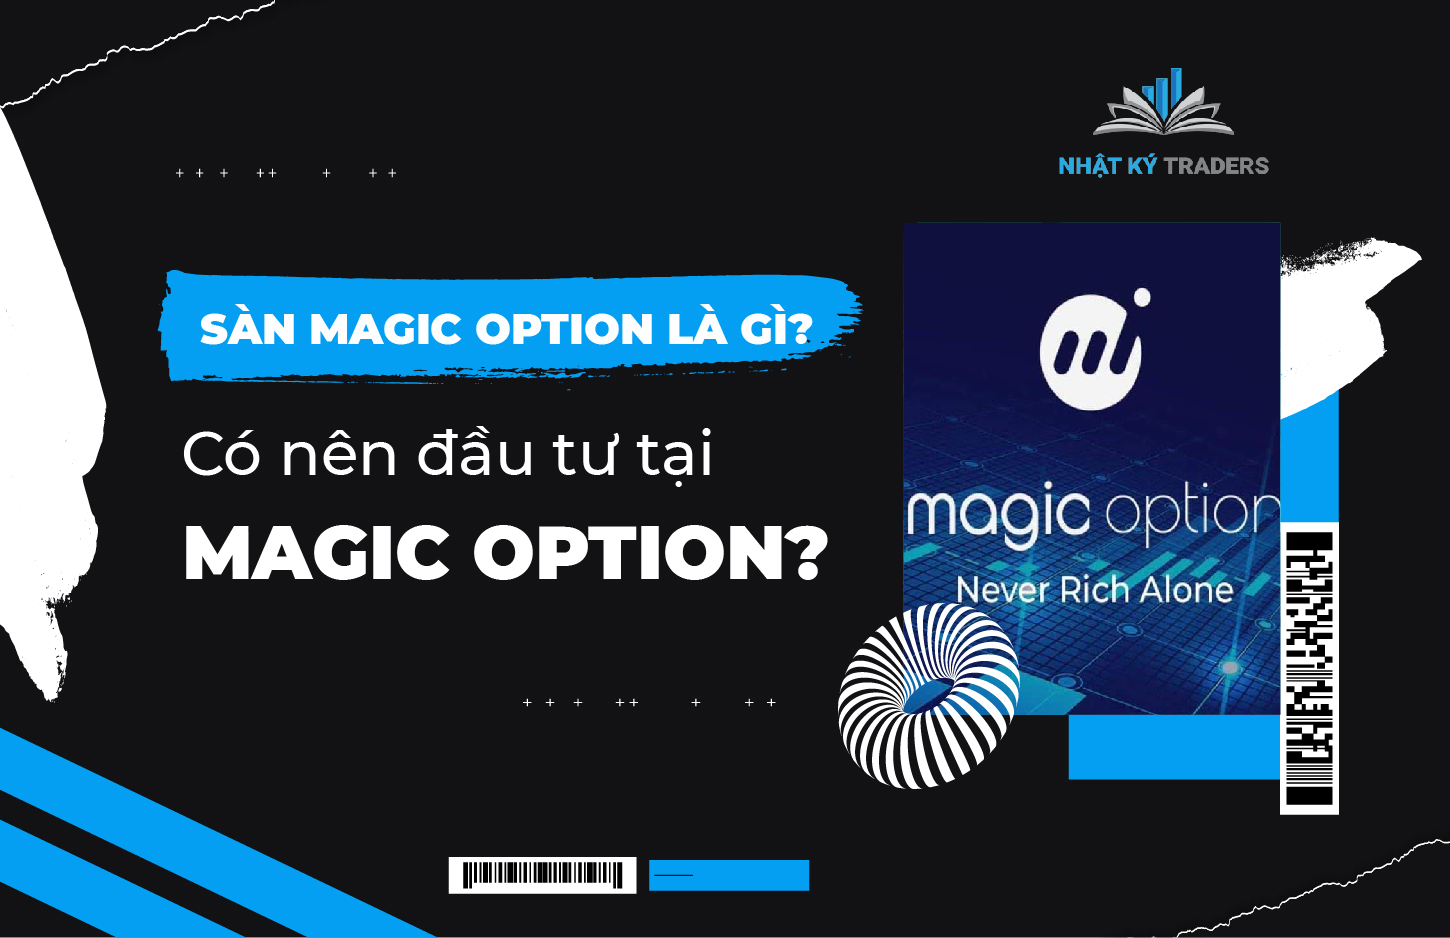 Magic Option là gì?